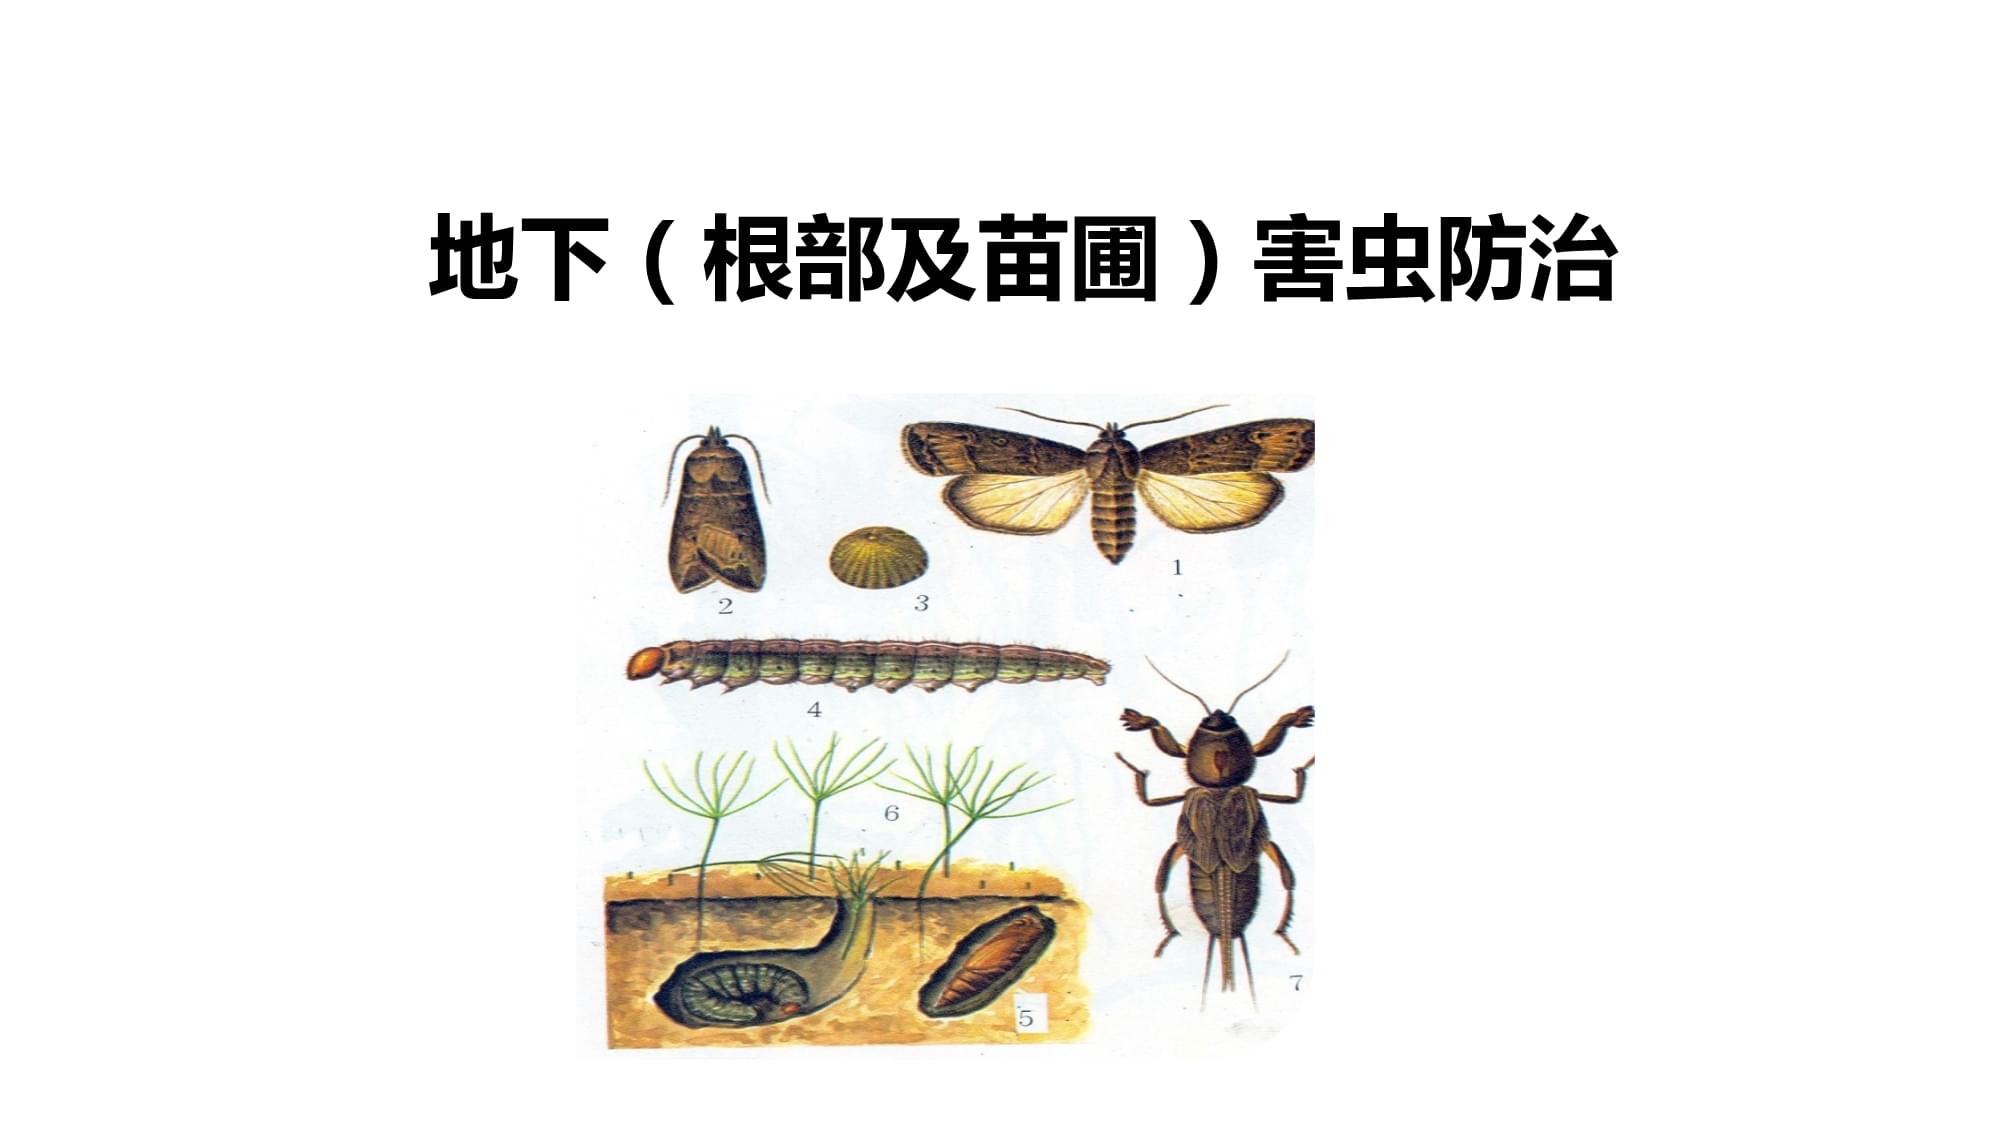 林木常见虫害的识别与防治-地下害虫的识别与防治(林业有害生物控制技术)